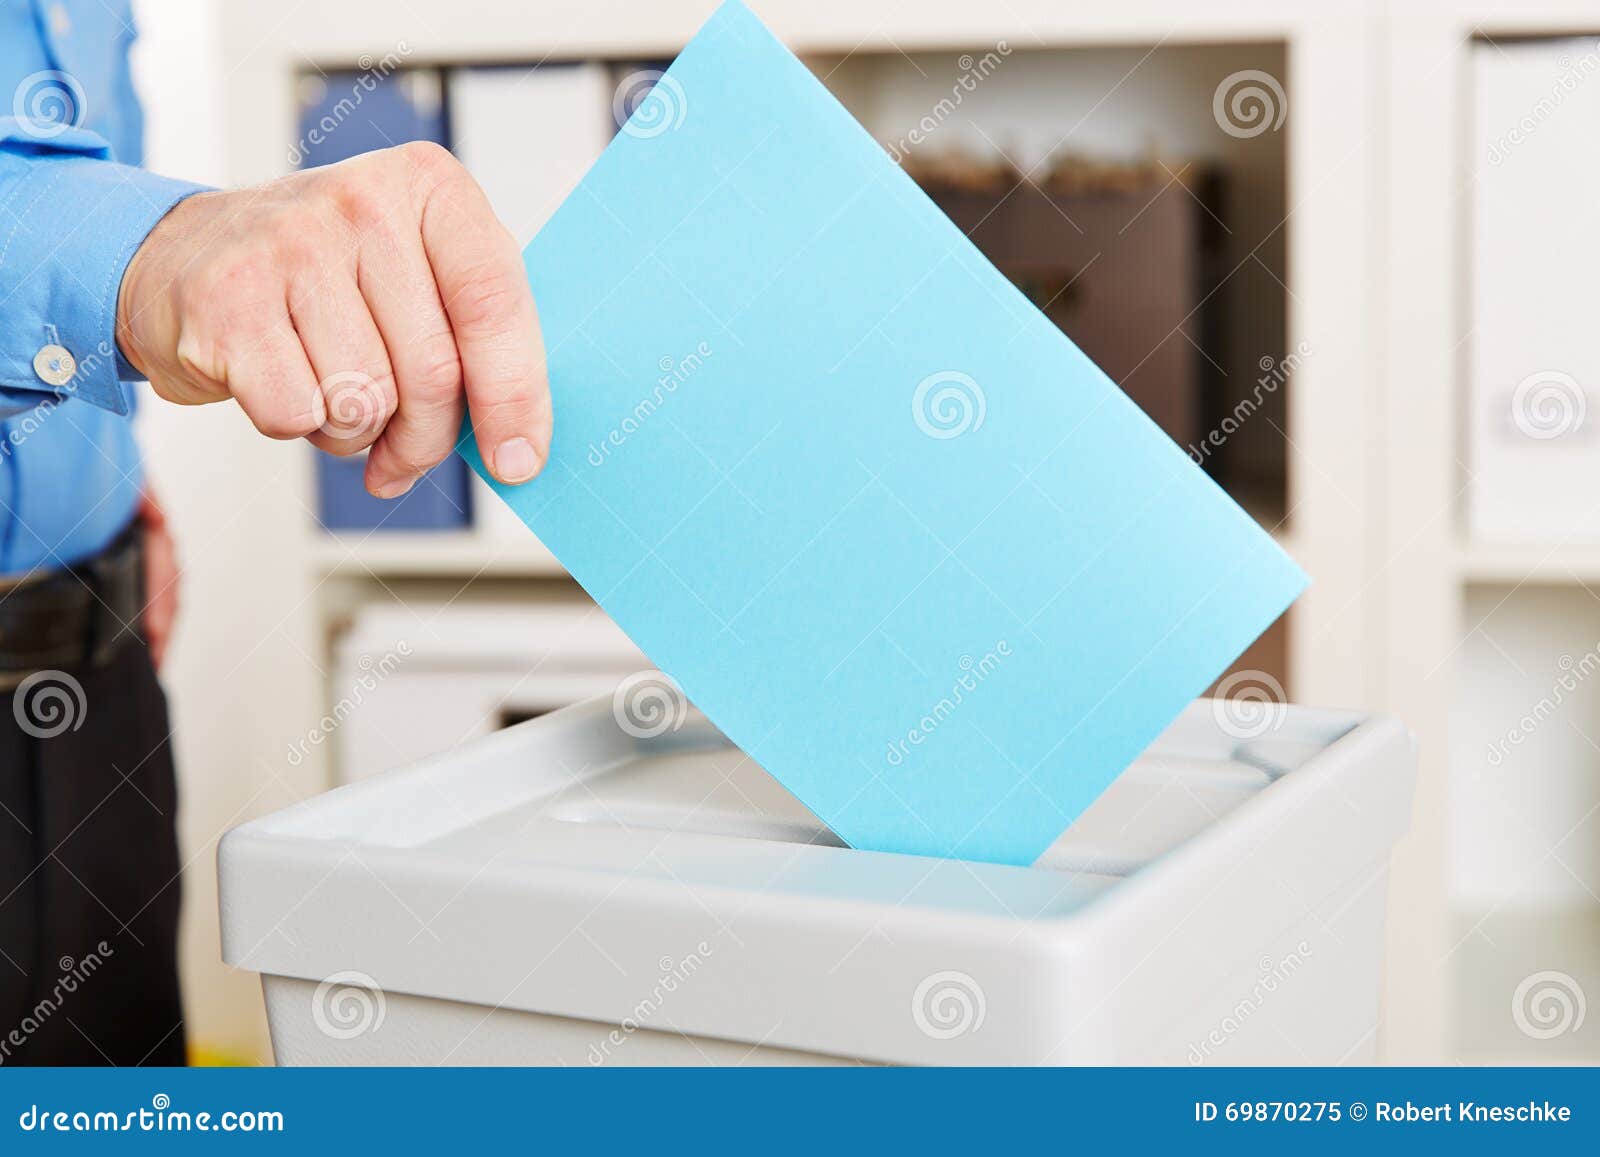 Main avec le bulletin de vote pendant l'élection